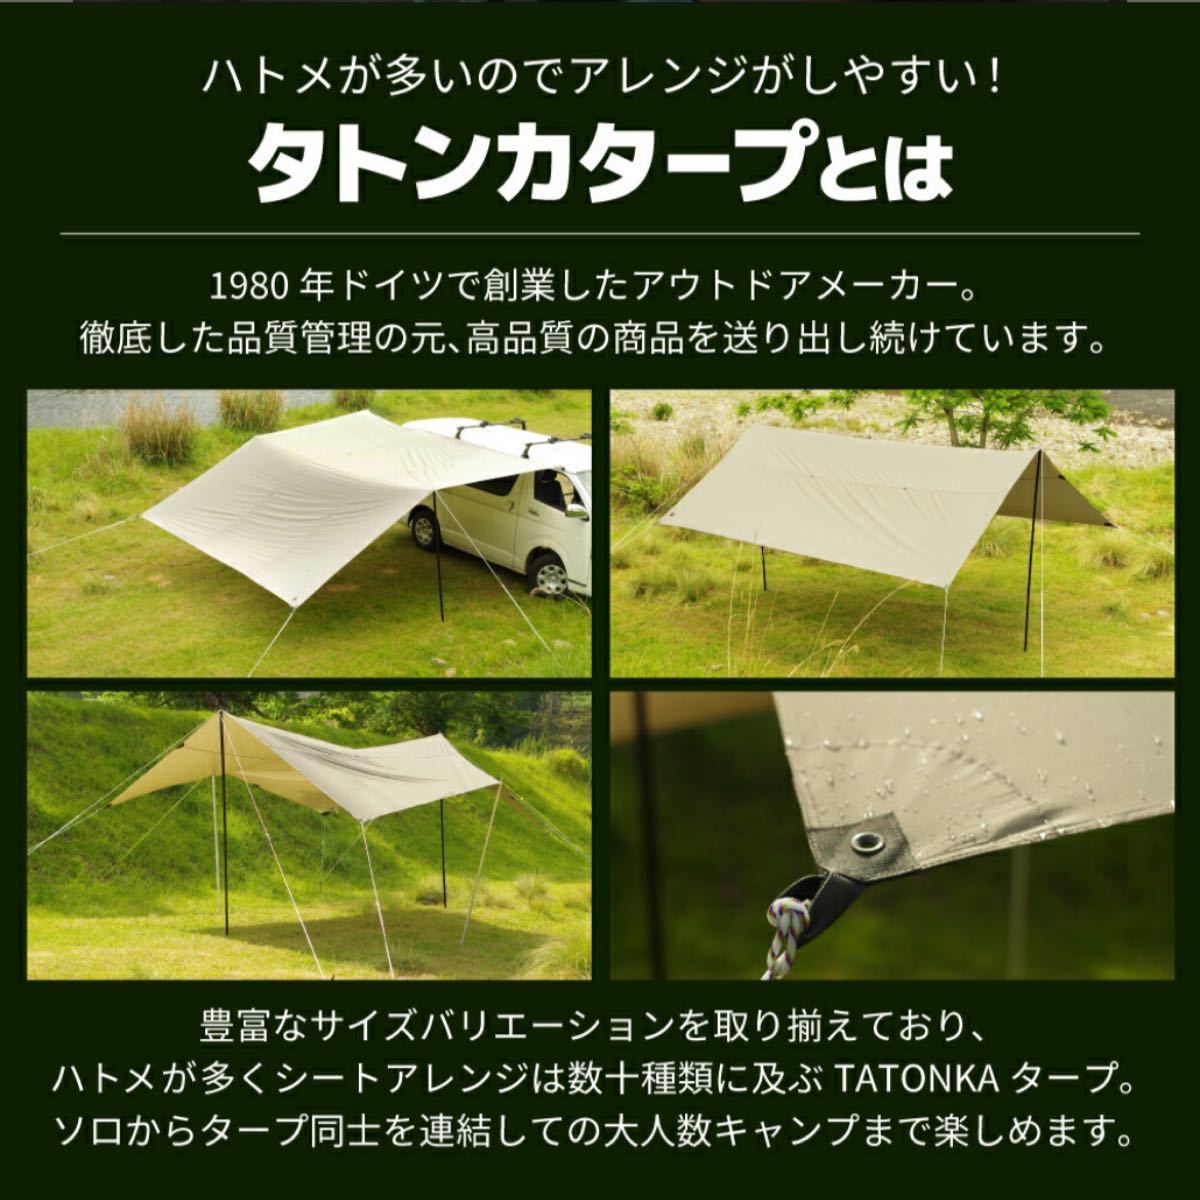 タトンカ1TC 旧モデル コクーン - テント